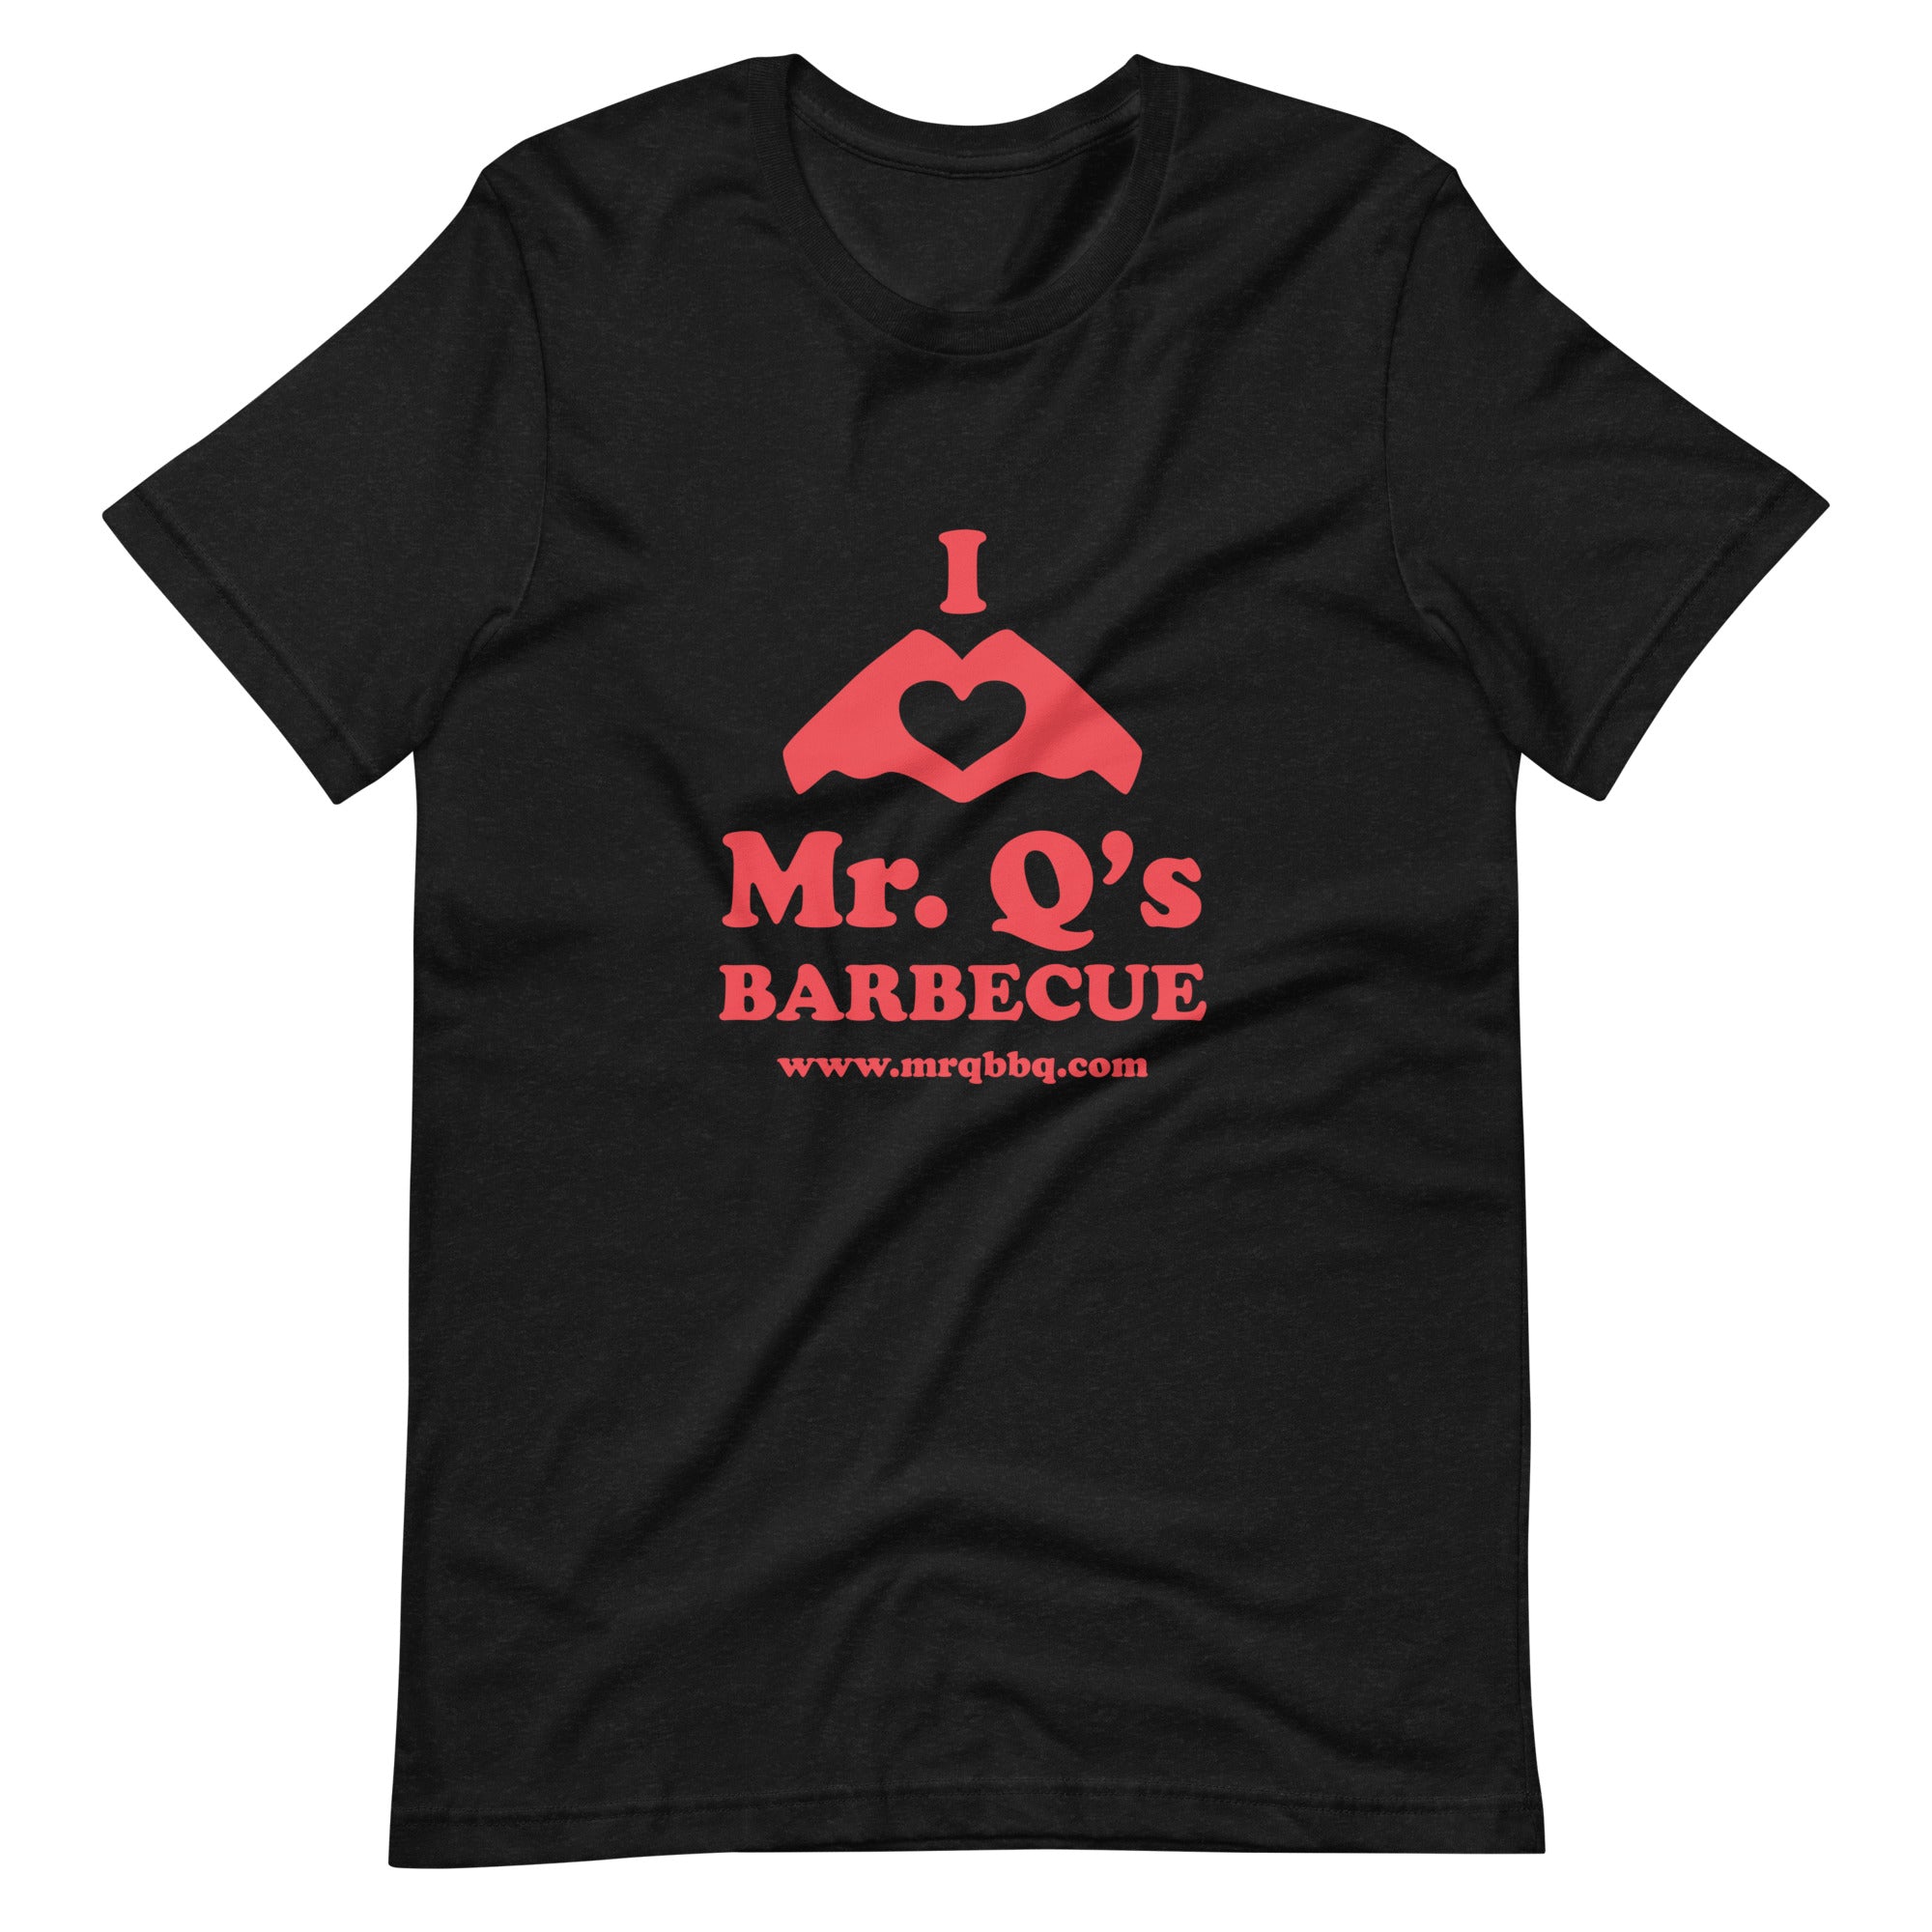 I <3 Mr. Q's T-Shirt